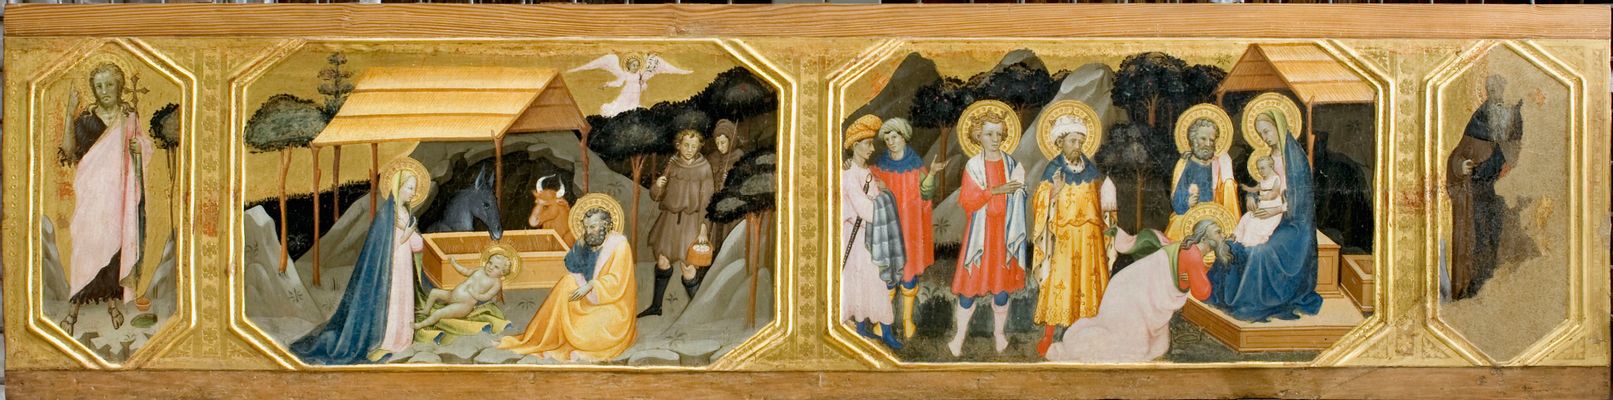 Natividad de Jesús, Adoración de los Reyes Magos, Sant'Antonio Abate 1440-1457 20 234